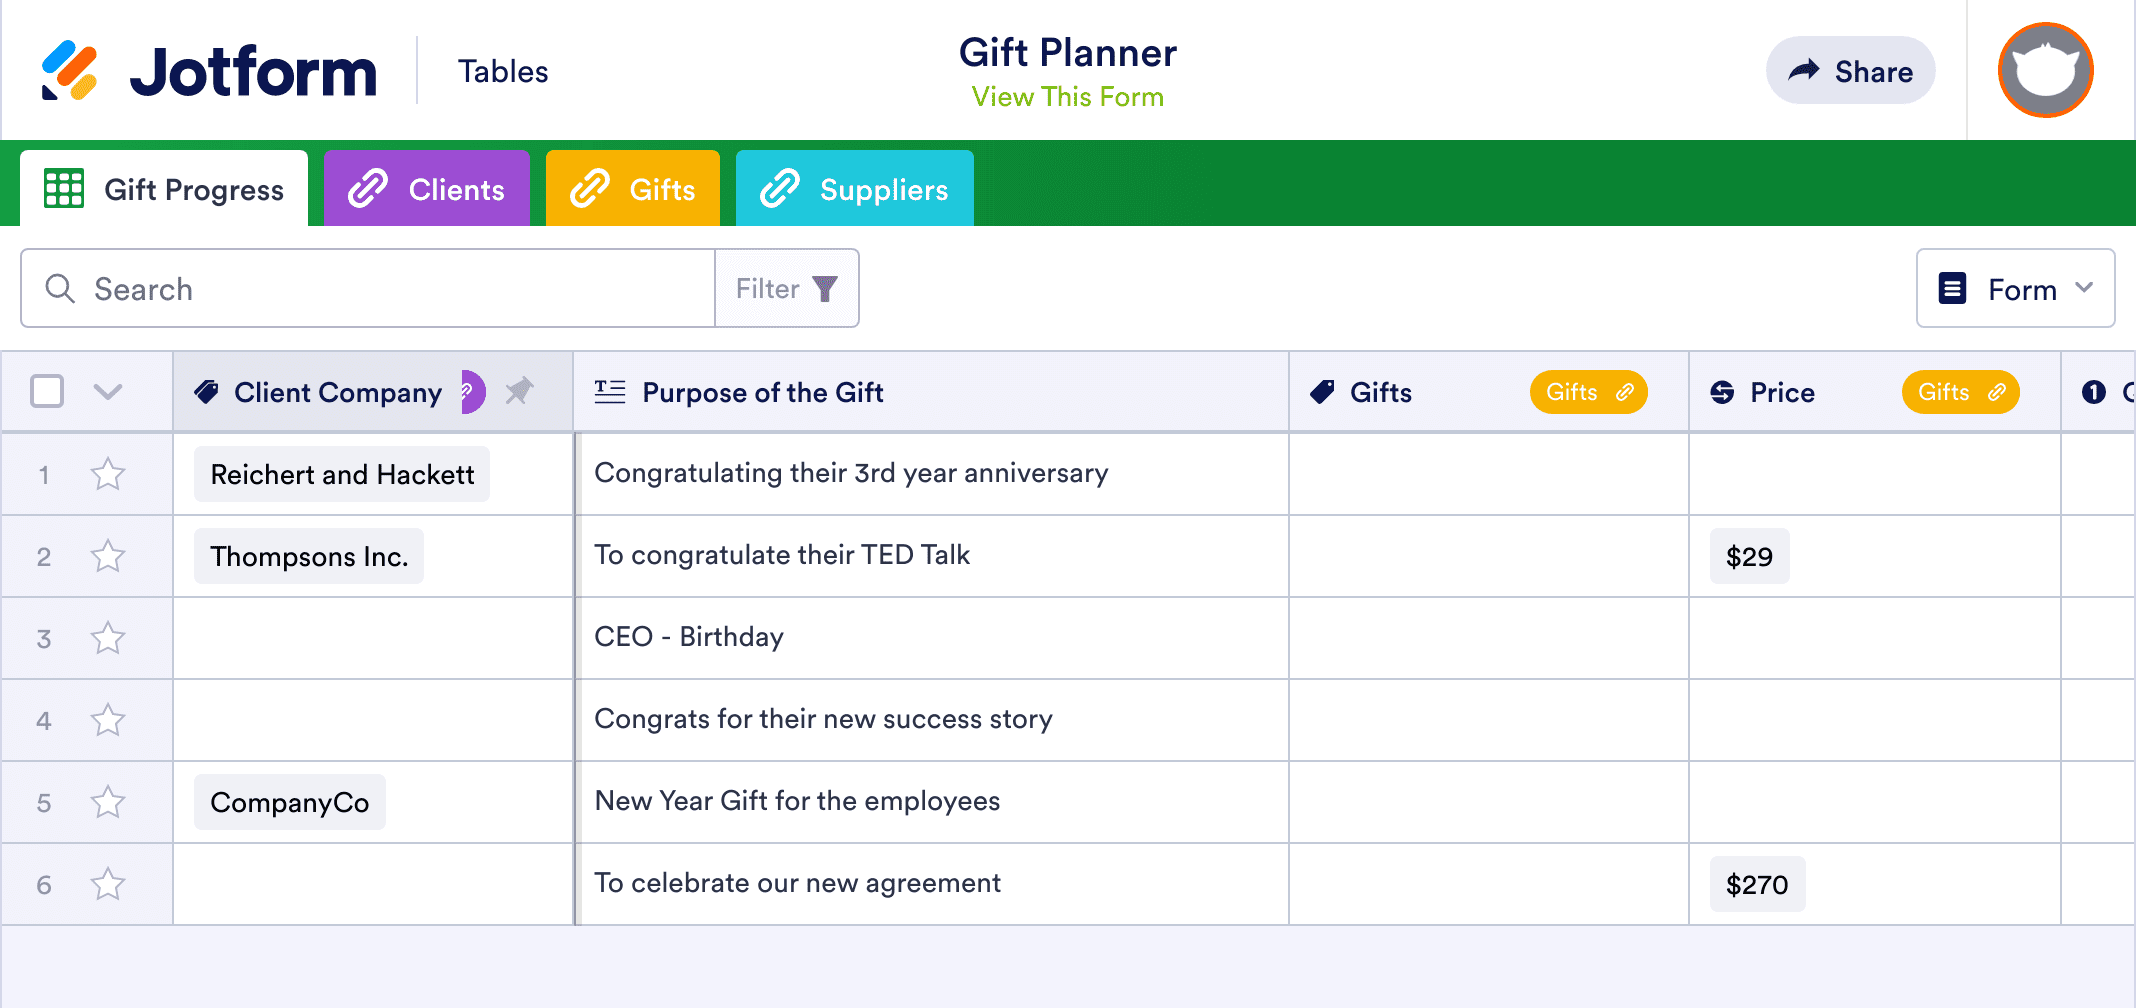 Gift Planner